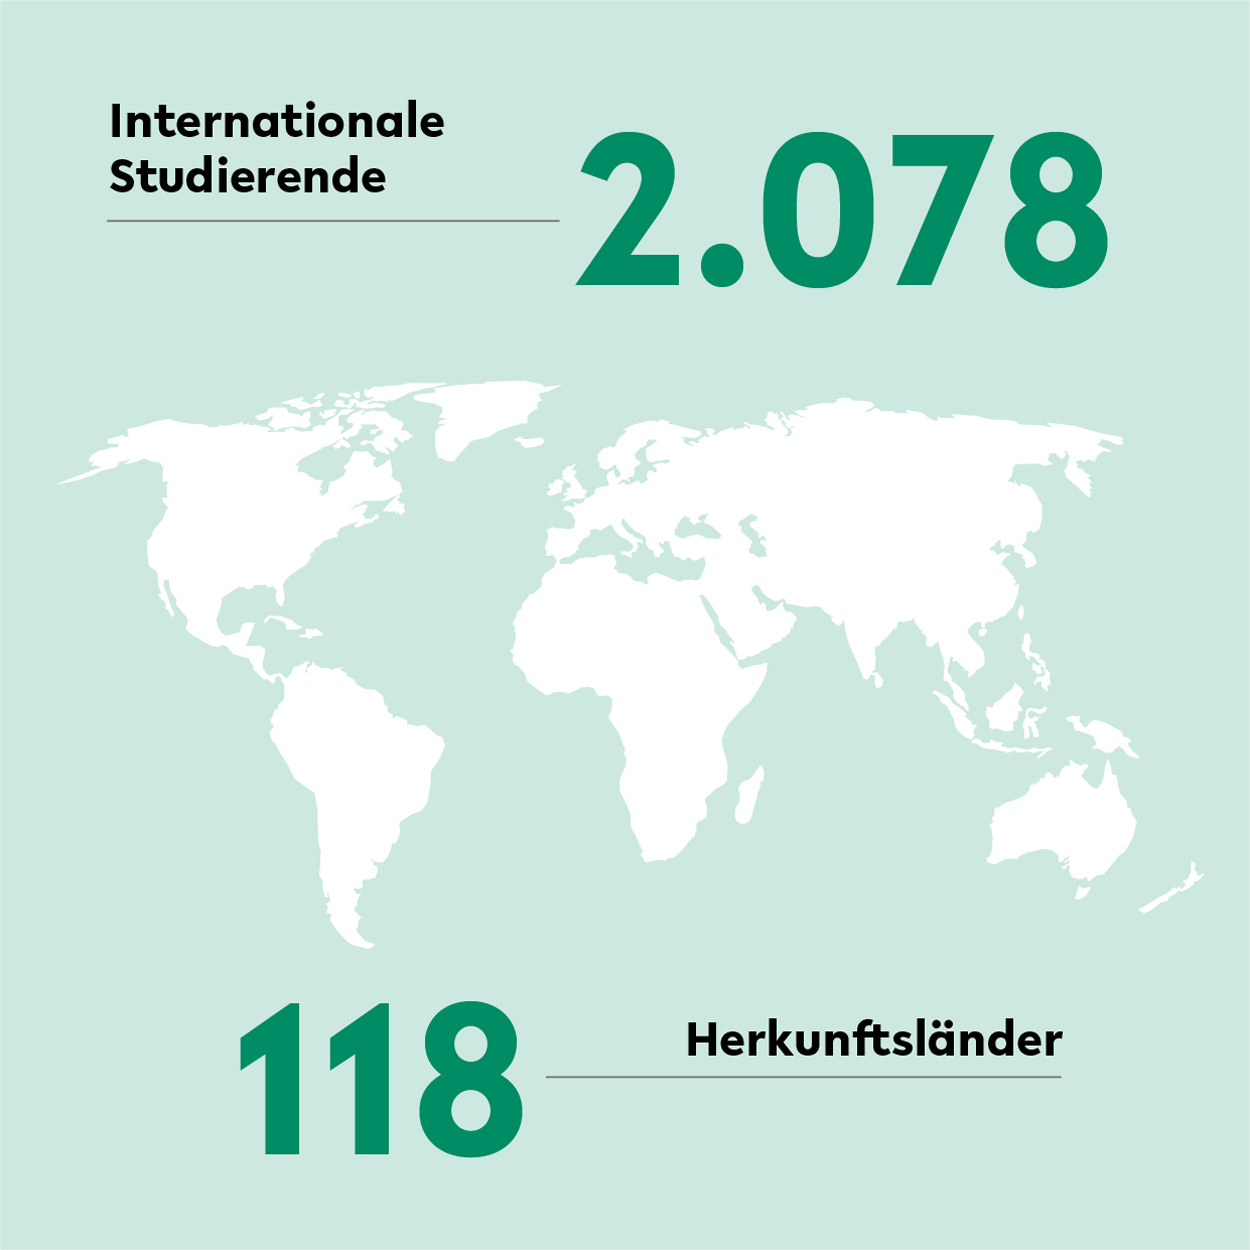 An der Universität Bielefeld studieren im Jahr 2021 2025 internationale Studierende aus 118 Ländern.  